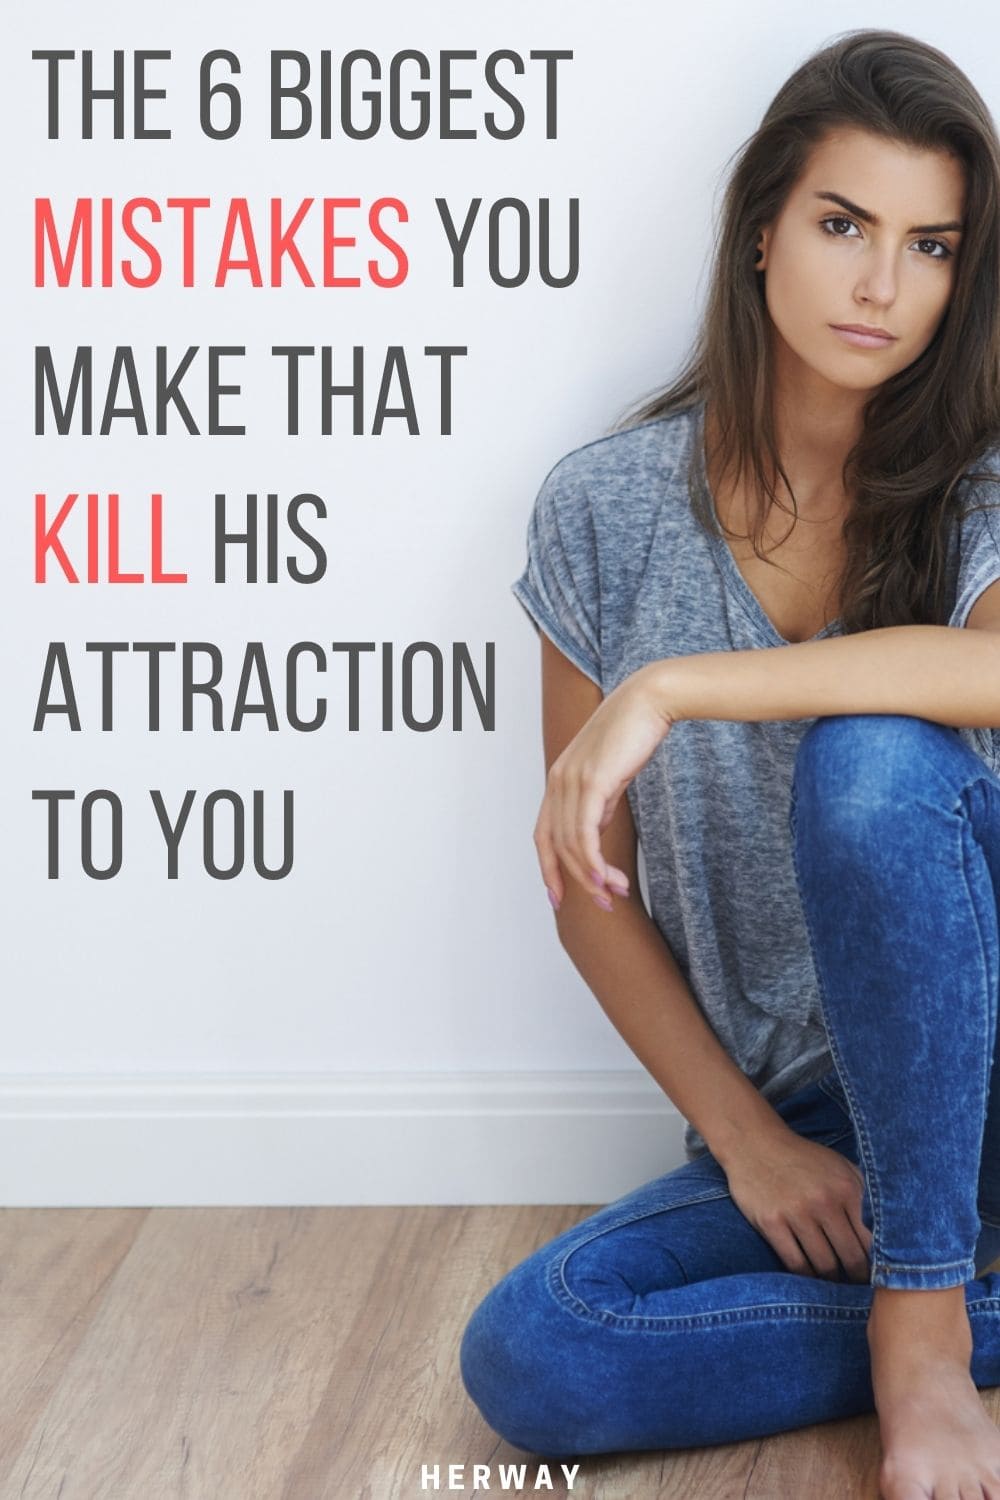 Los 6 mayores errores que cometes y que matan su atracción por ti